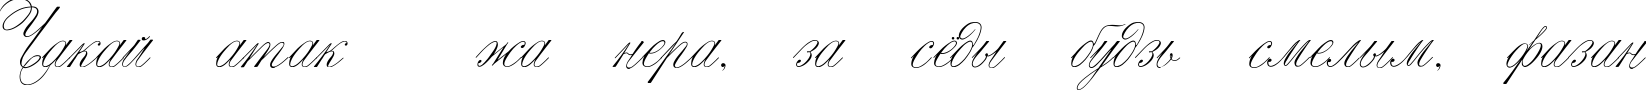 Пример написания шрифтом Script Thin Pen текста на белорусском